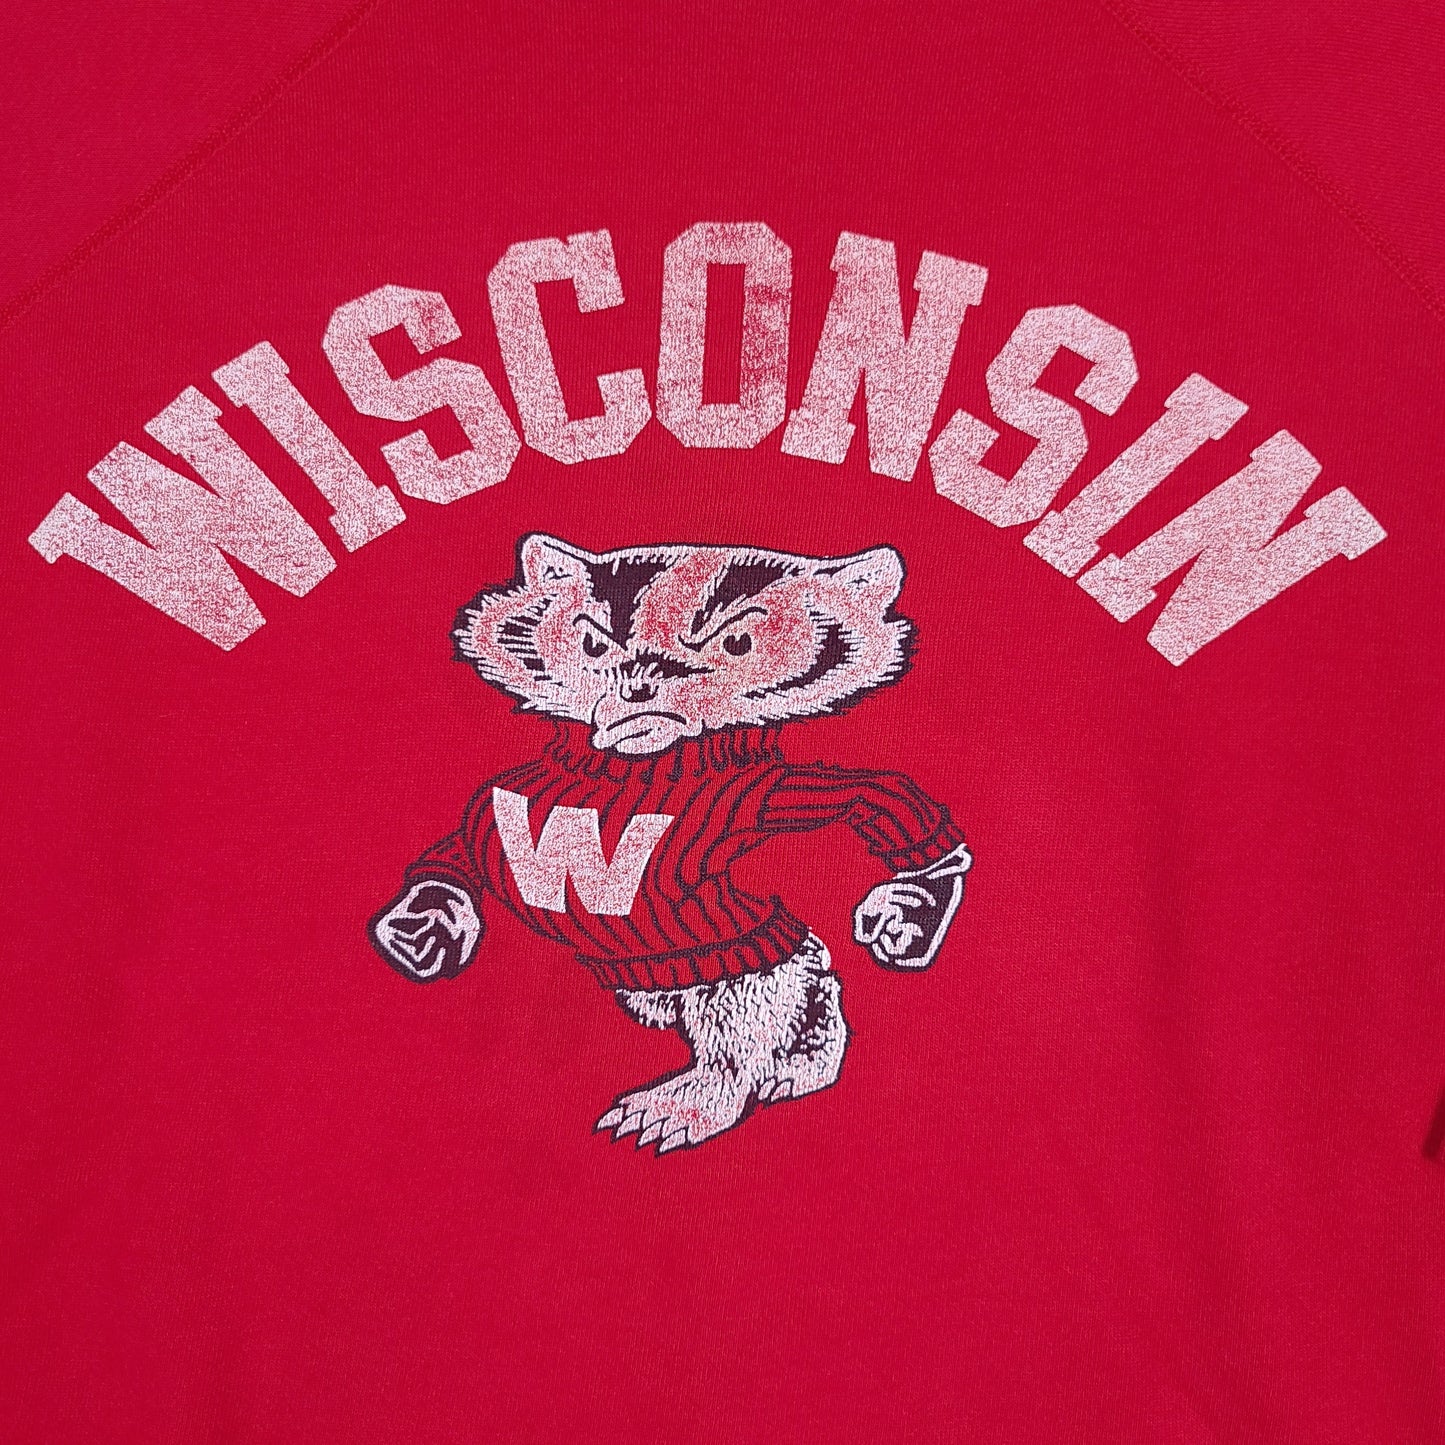 Vintage University of Wisconsin Badgers Red Sweatshirt